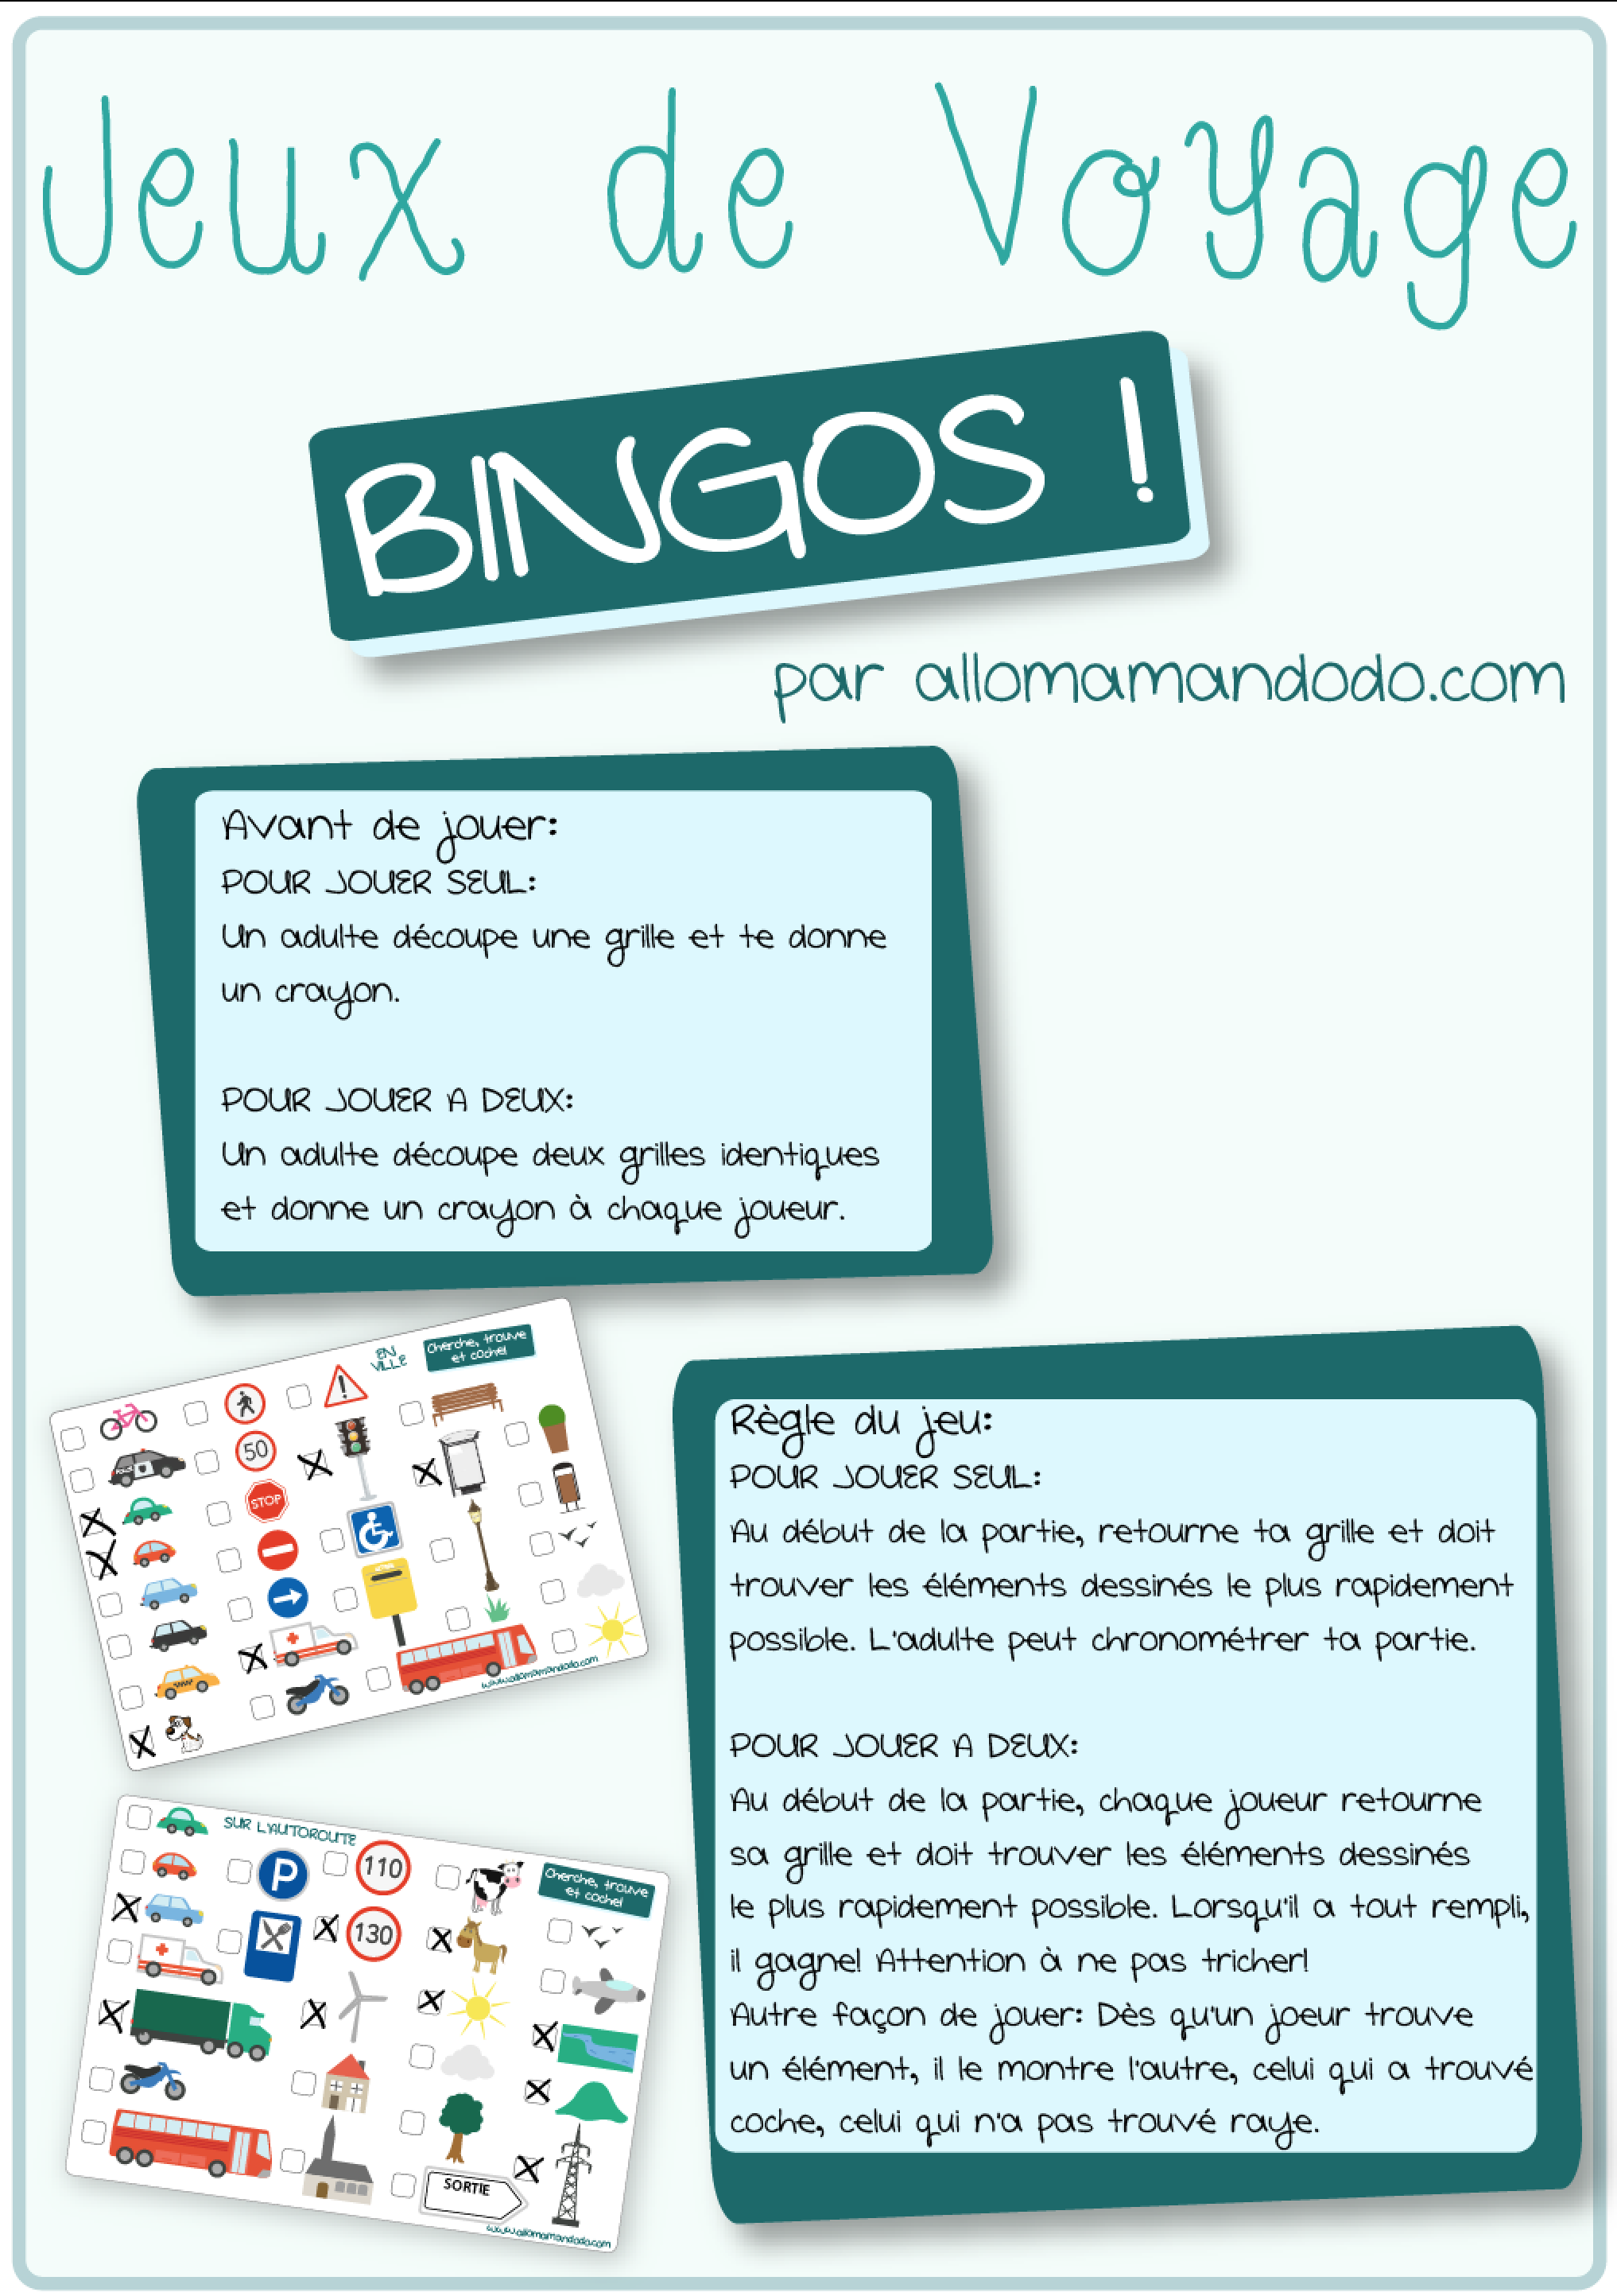 Les Occuper en Voiture: Jeux de Voyage bingo de la route à imprimer! -  Allo Maman Dodo